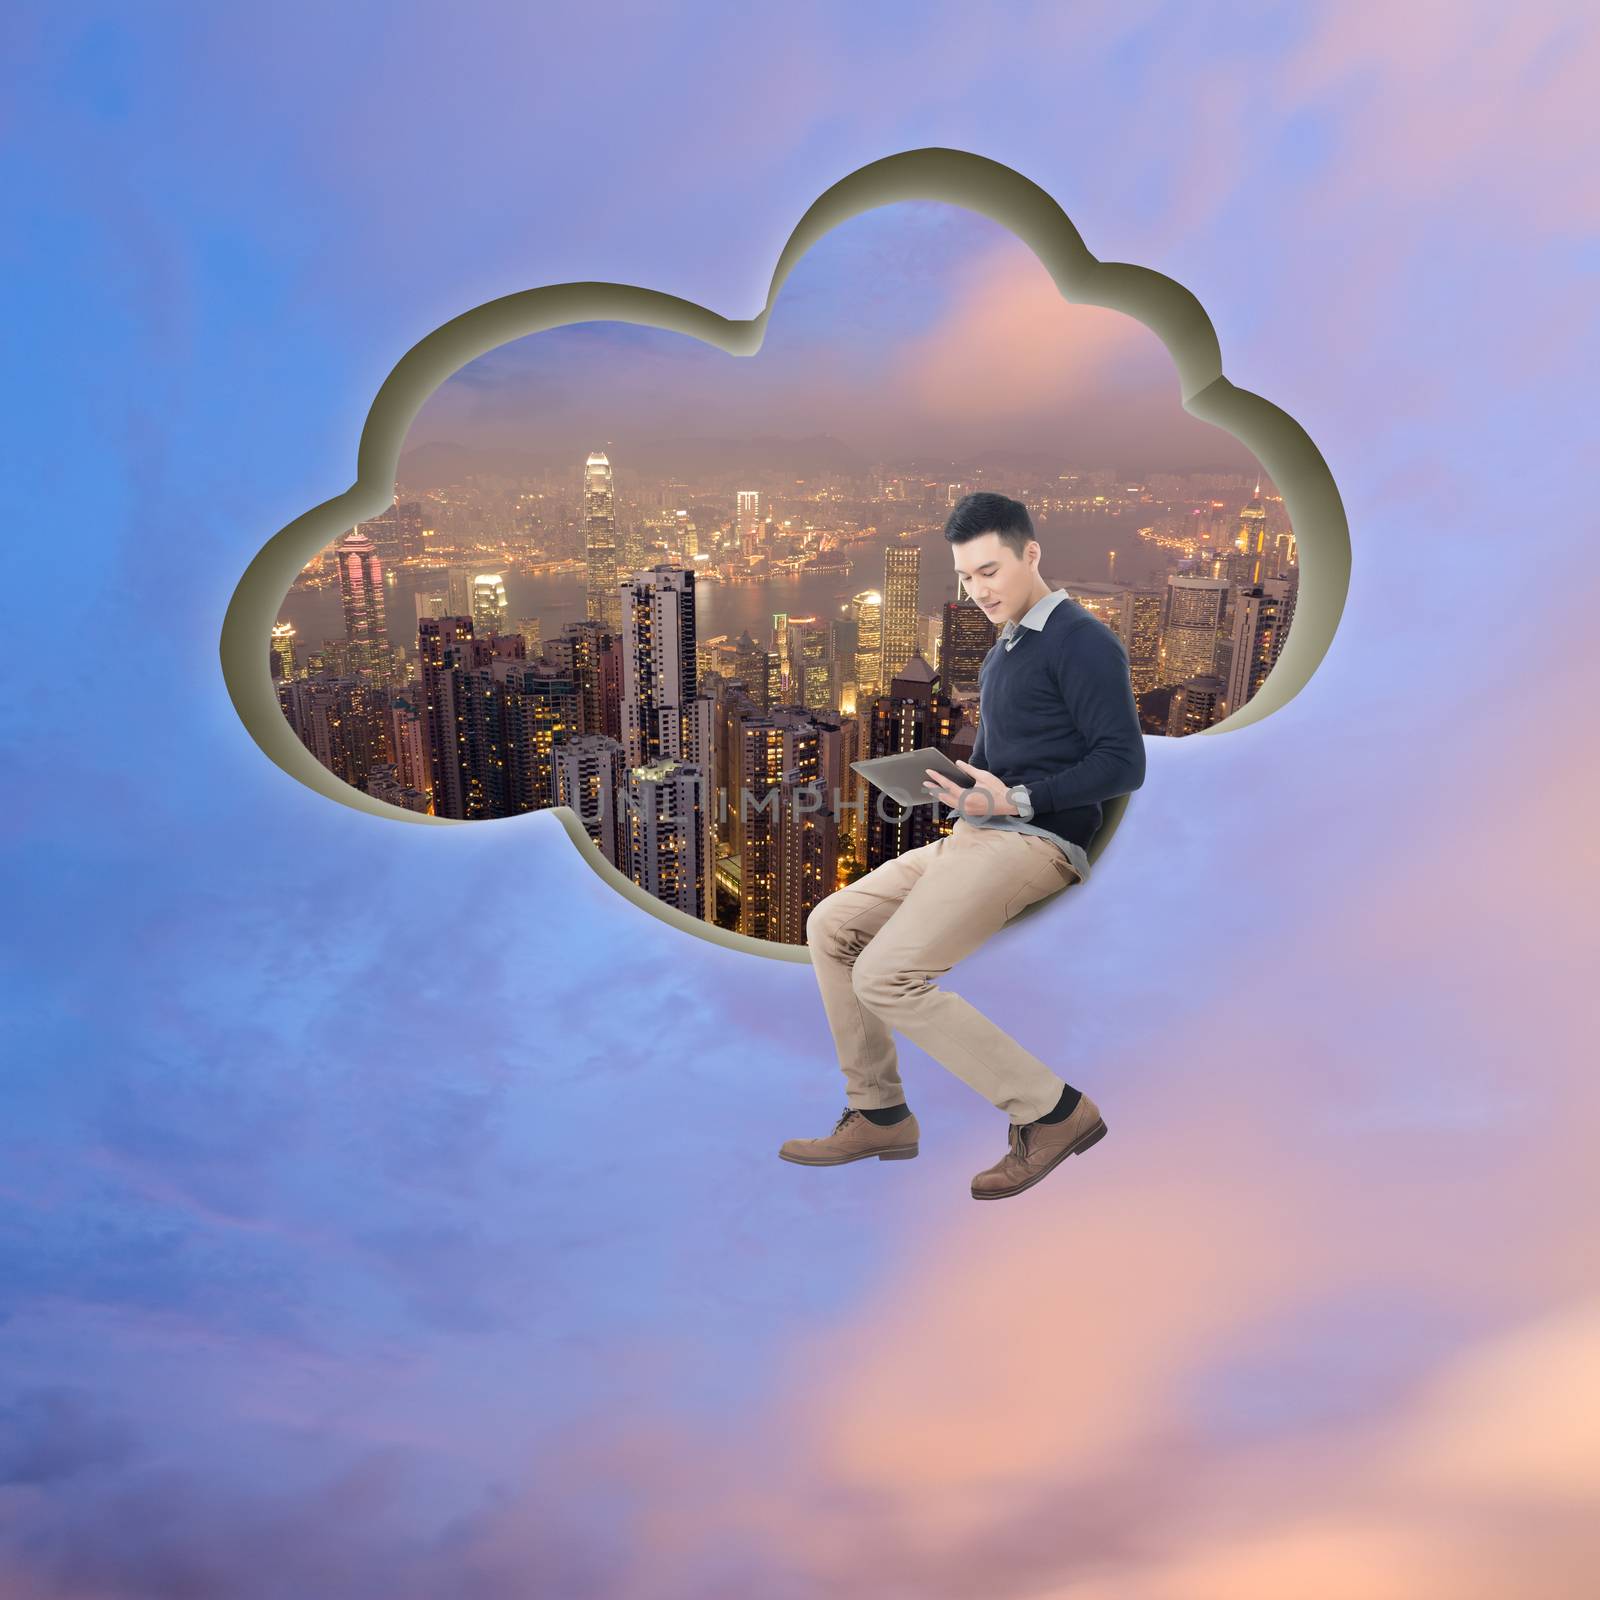 Cloud concept by elwynn